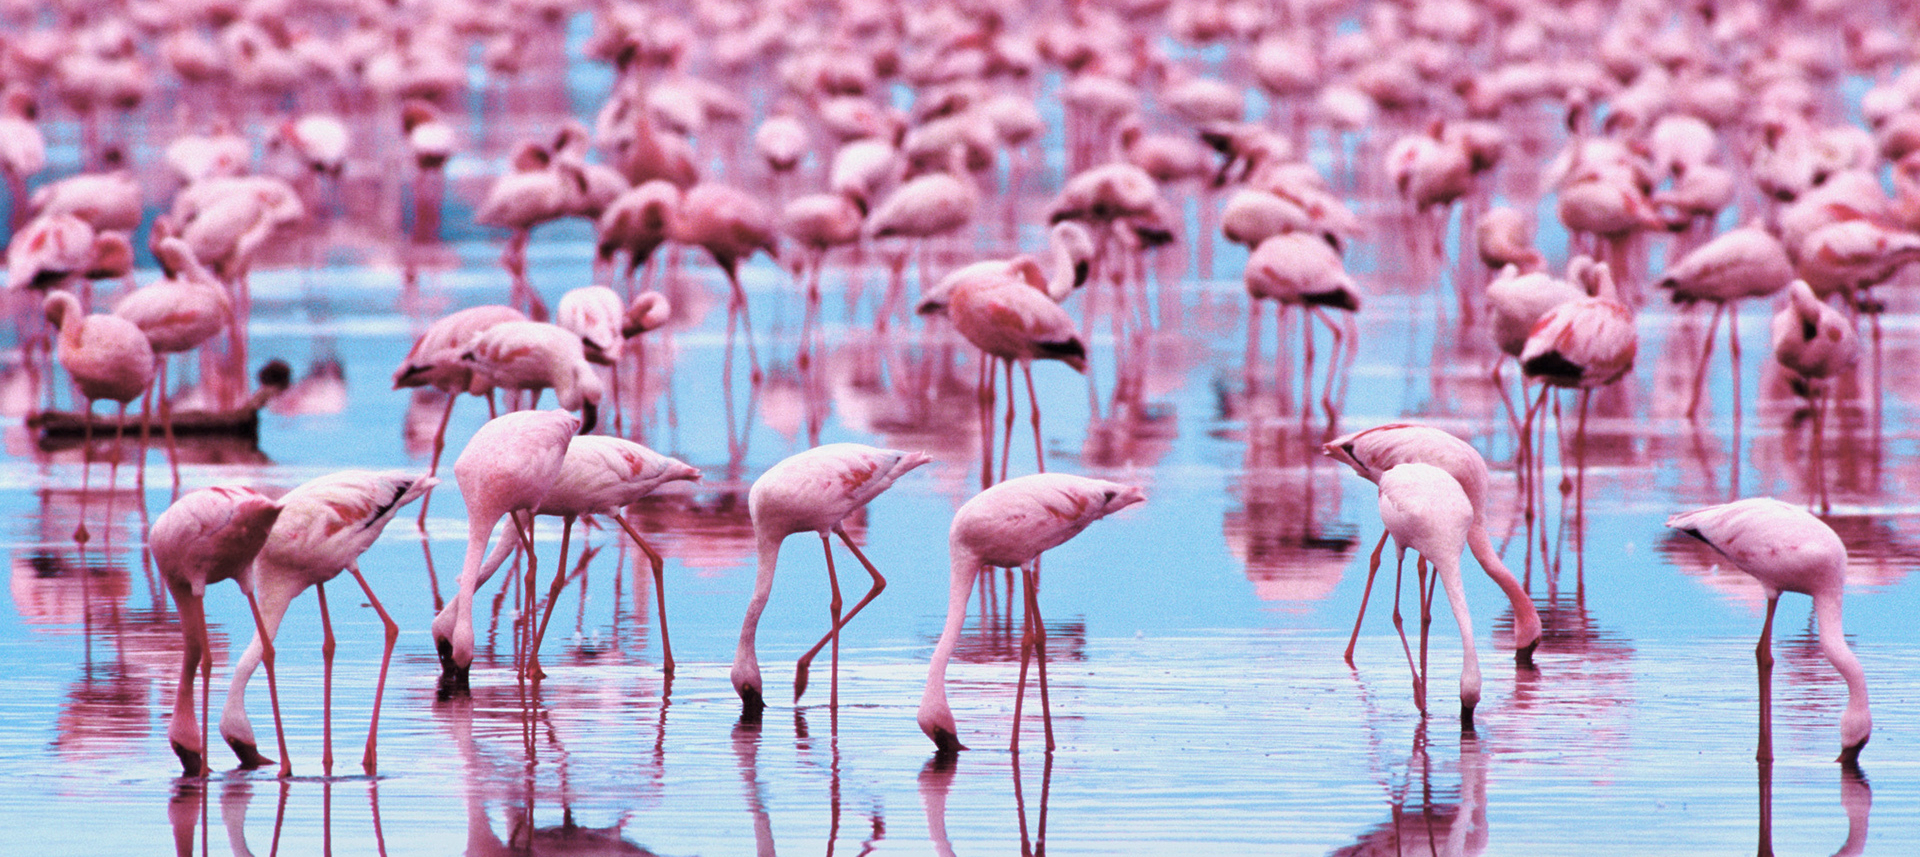 Explore The Collection Birds Flamingos Flamingo